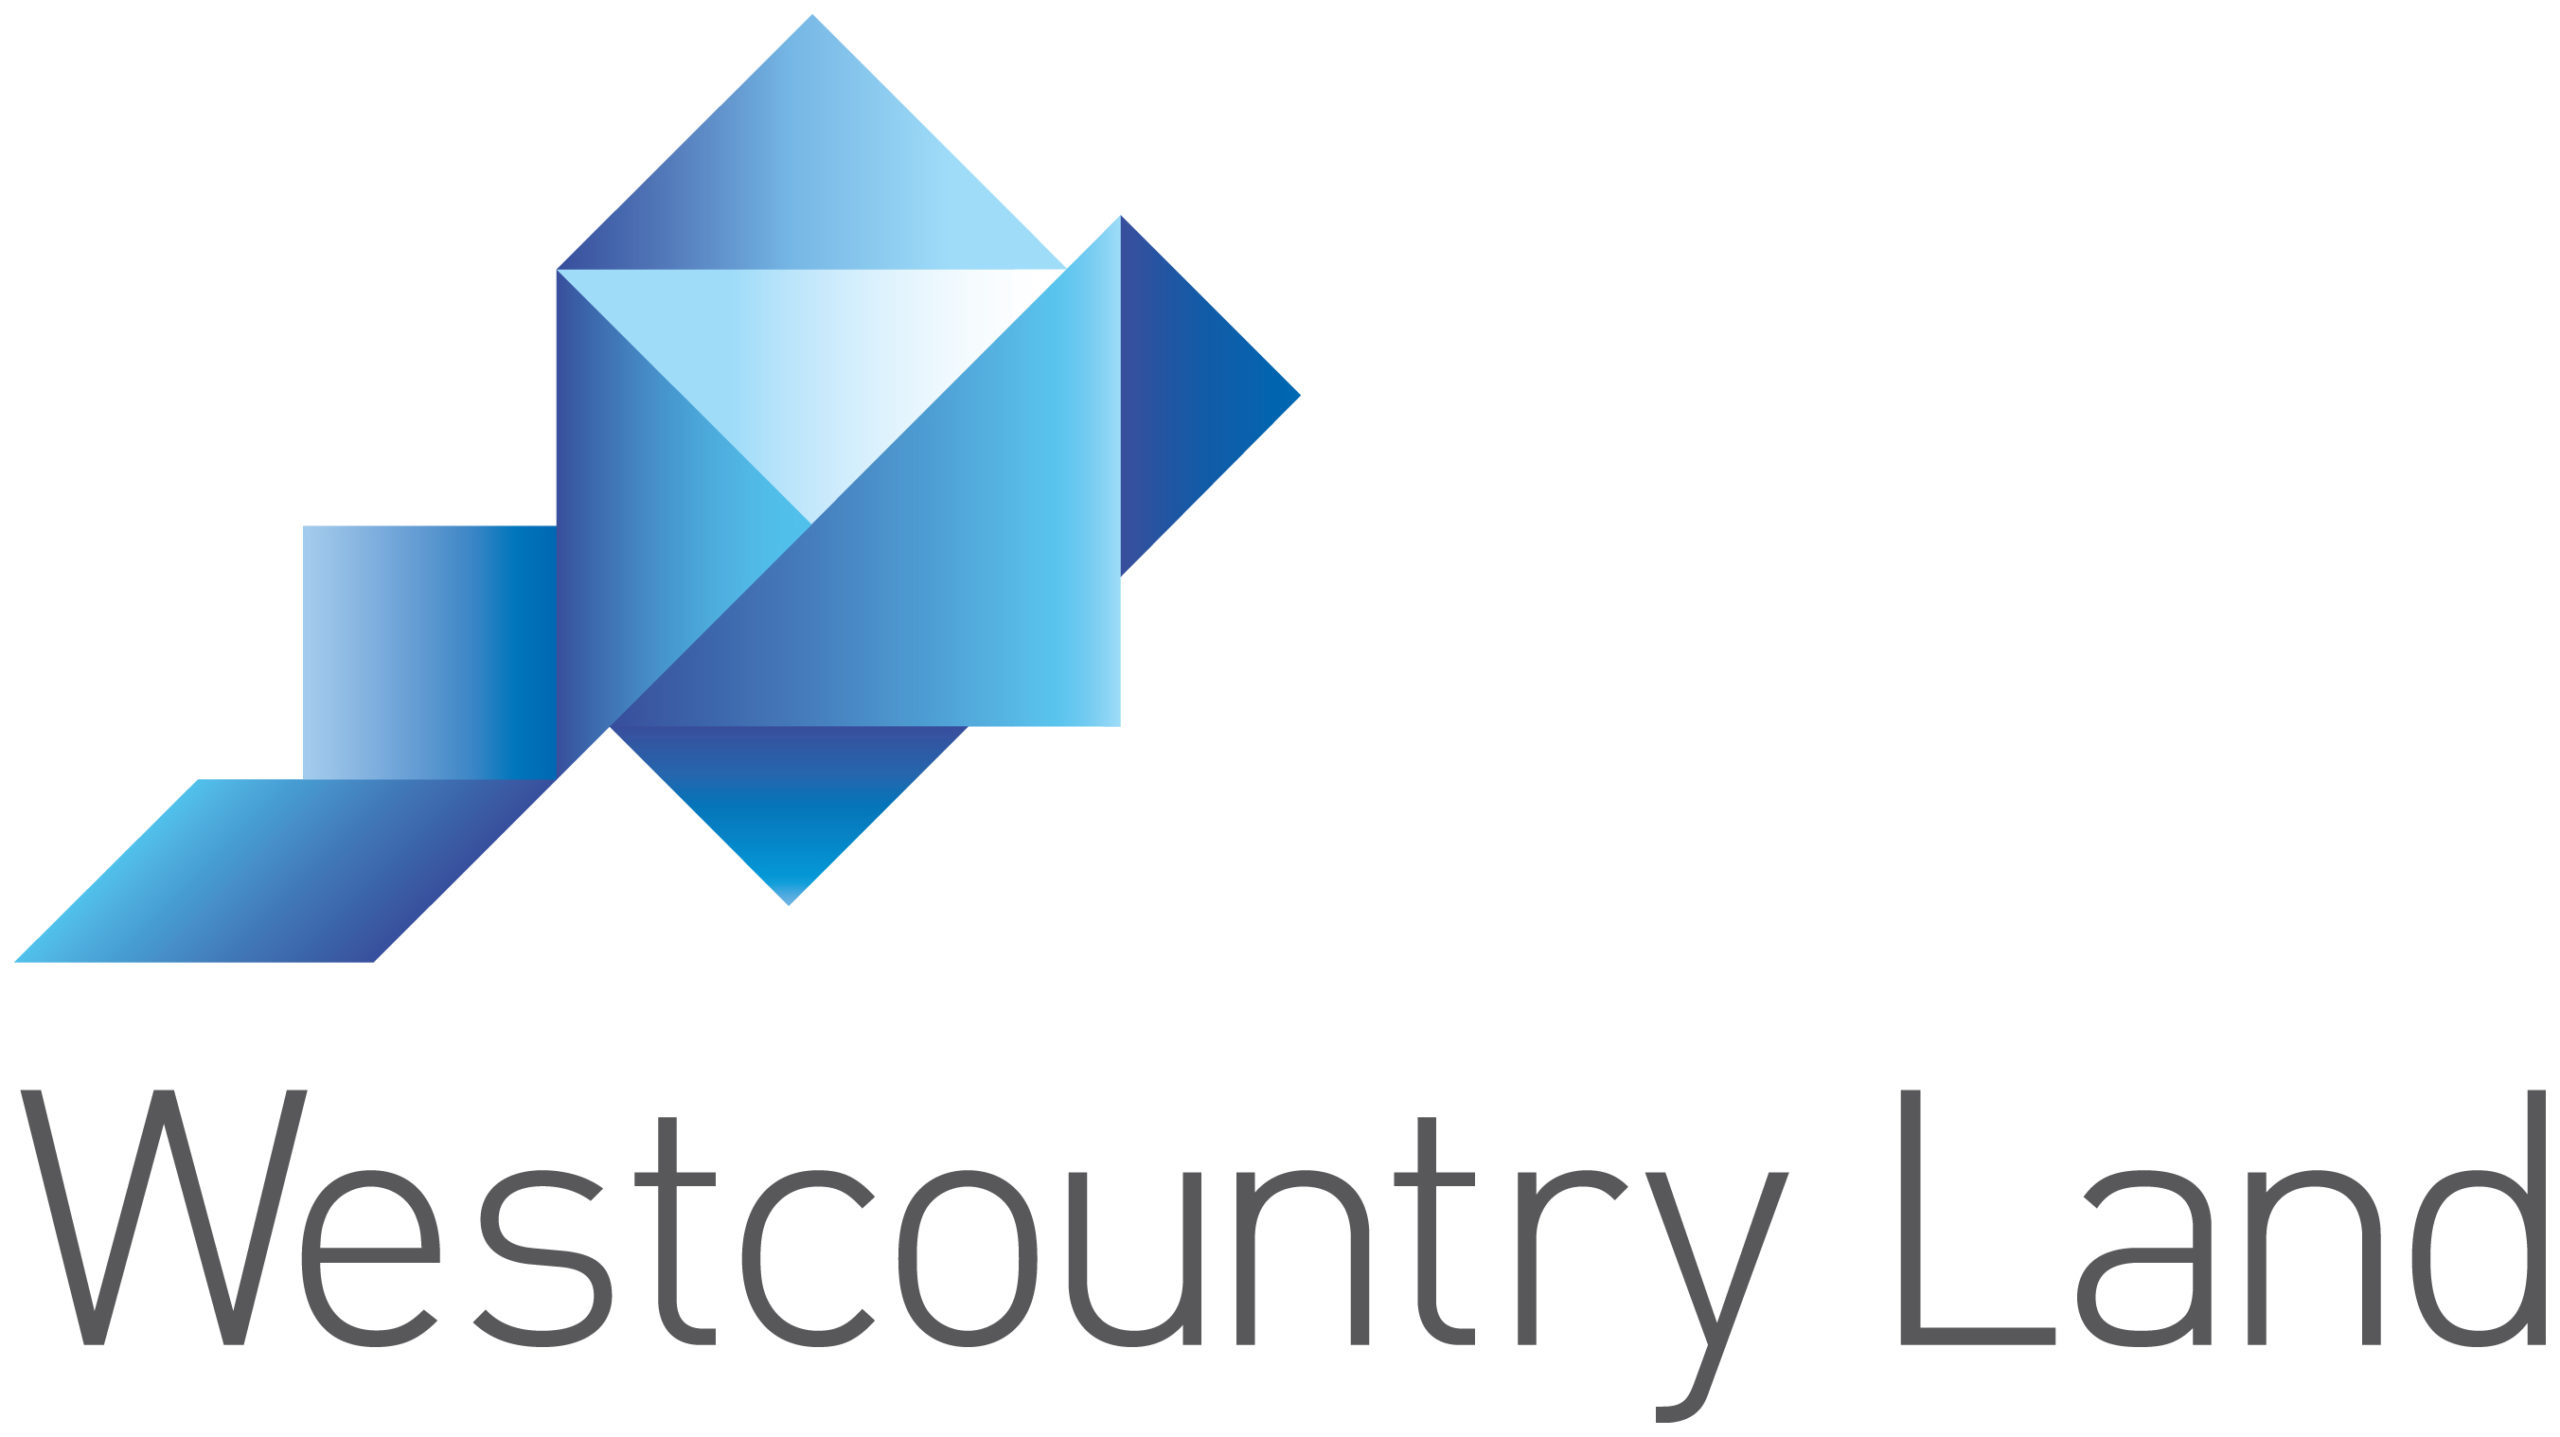 Westcountry Land Ltd